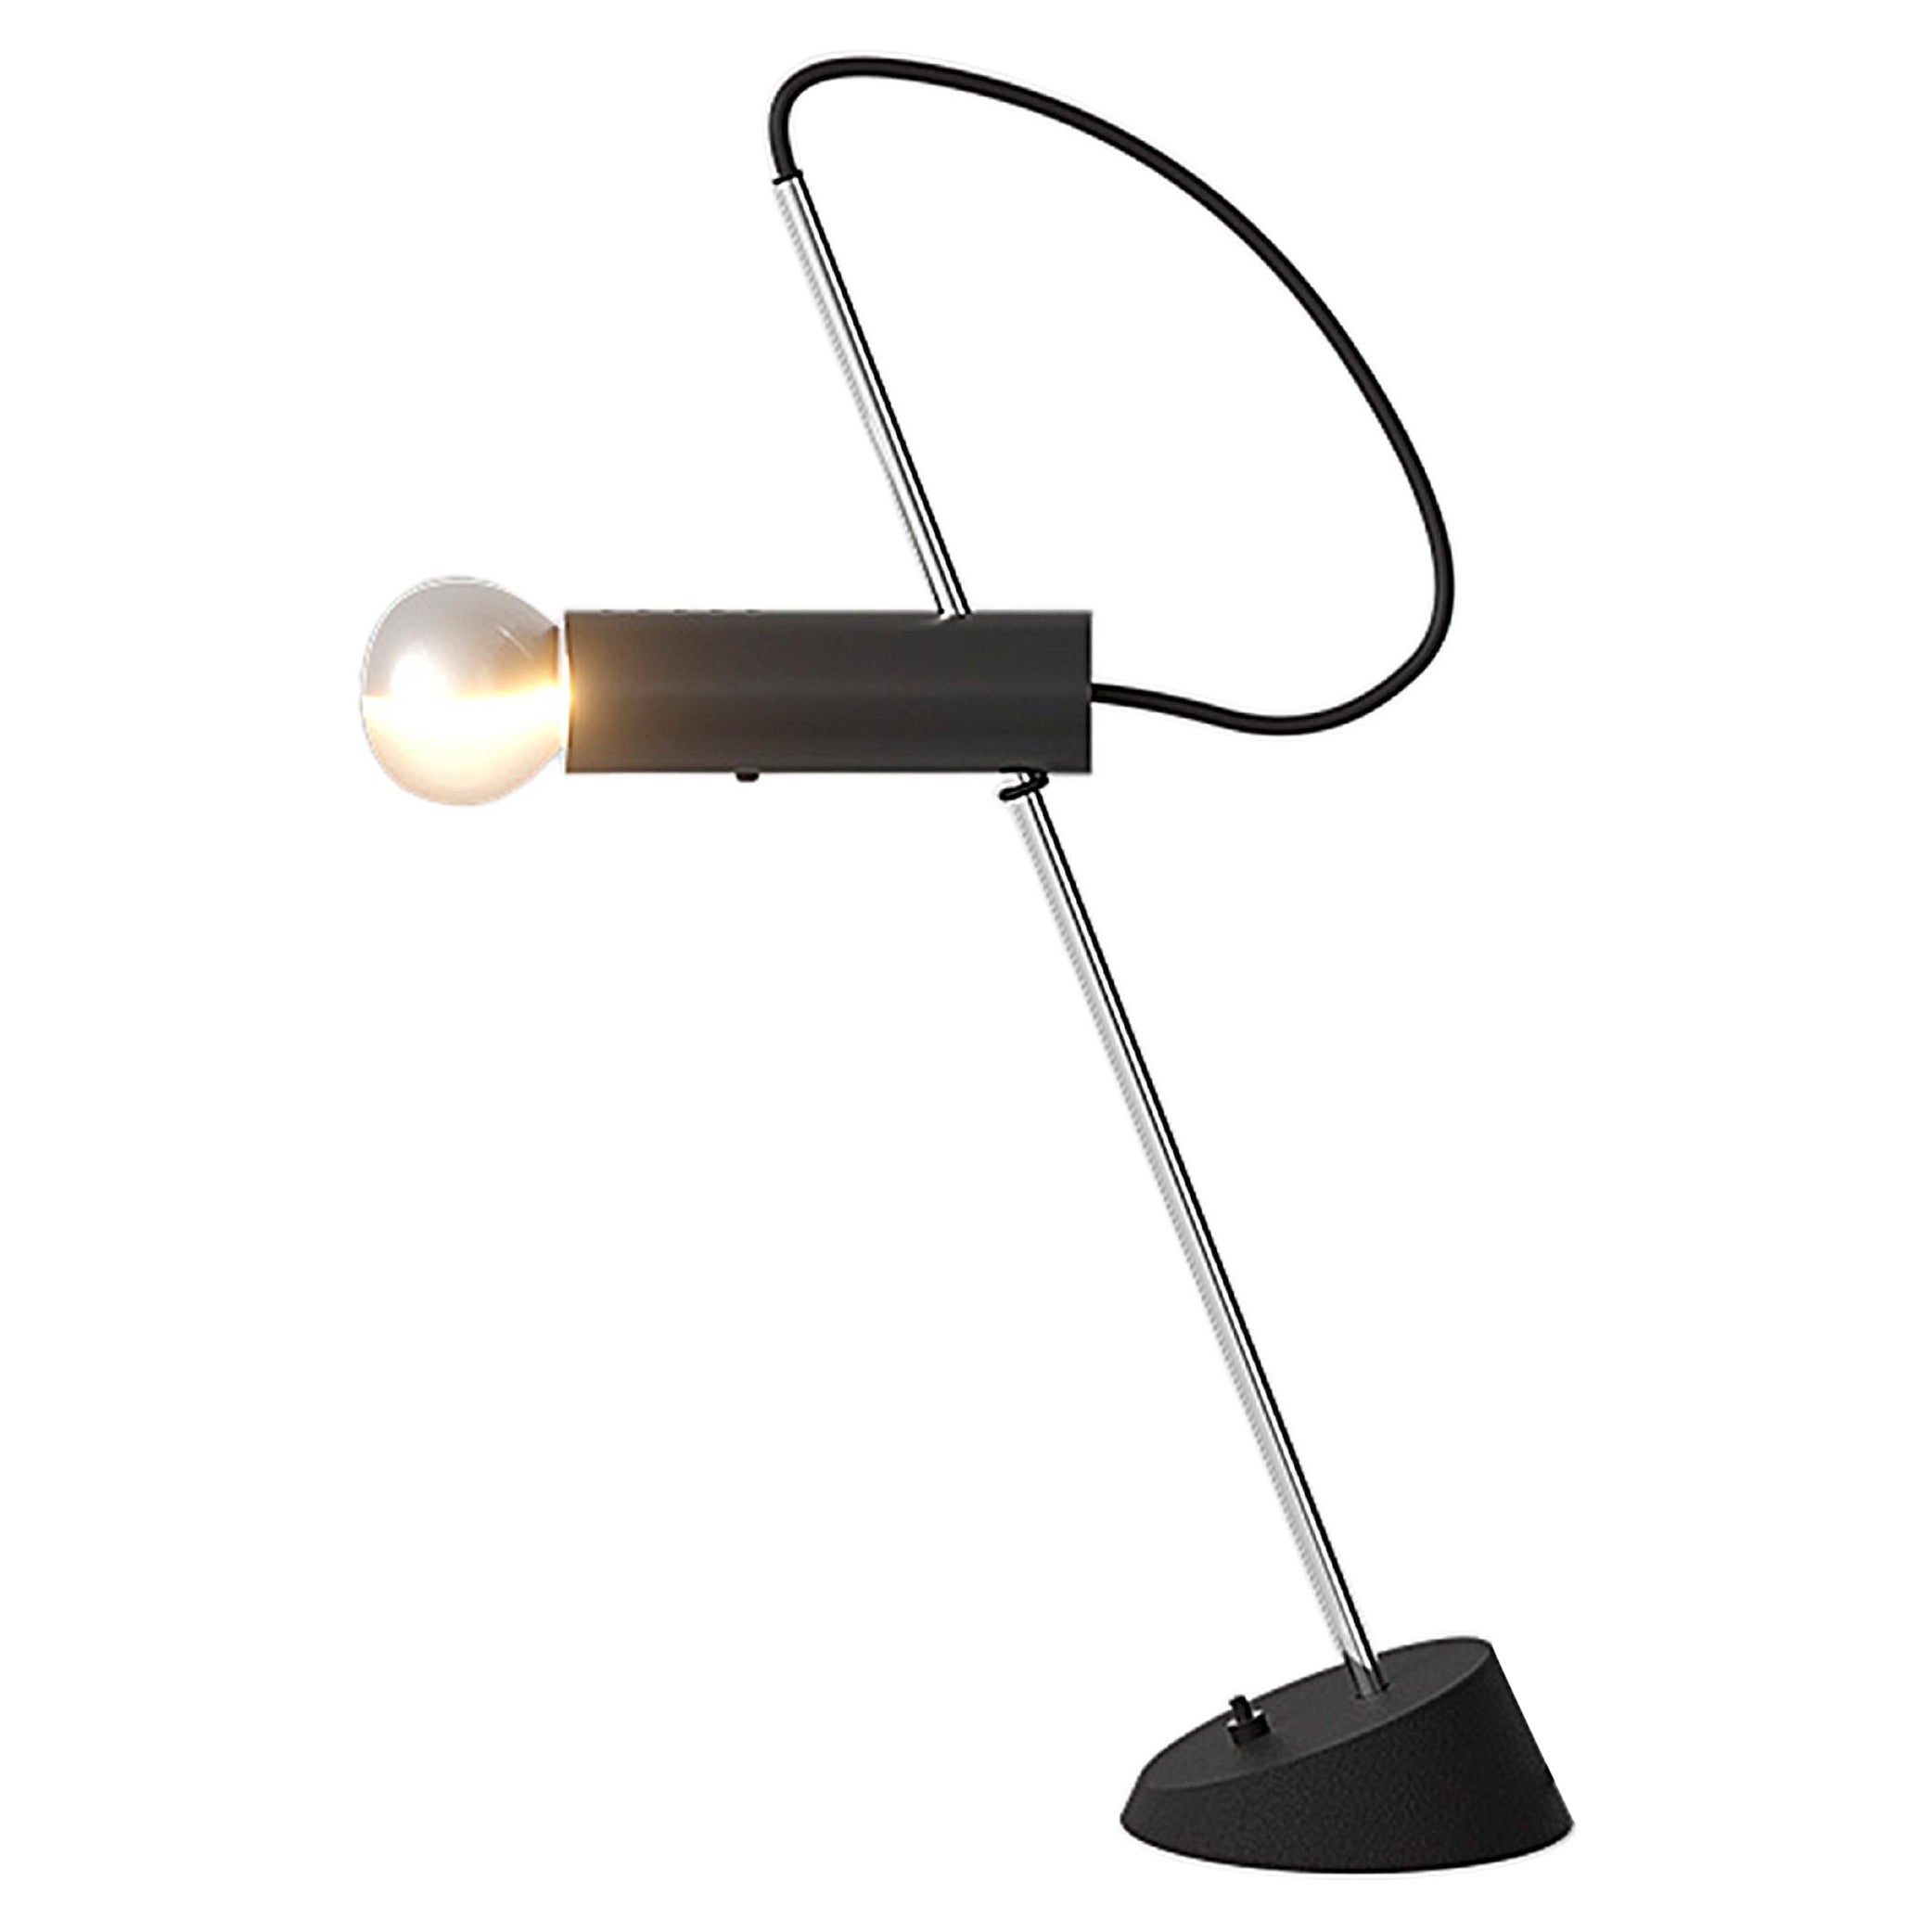 Gino Sarfatti-Lampe Modell 566 von Astep